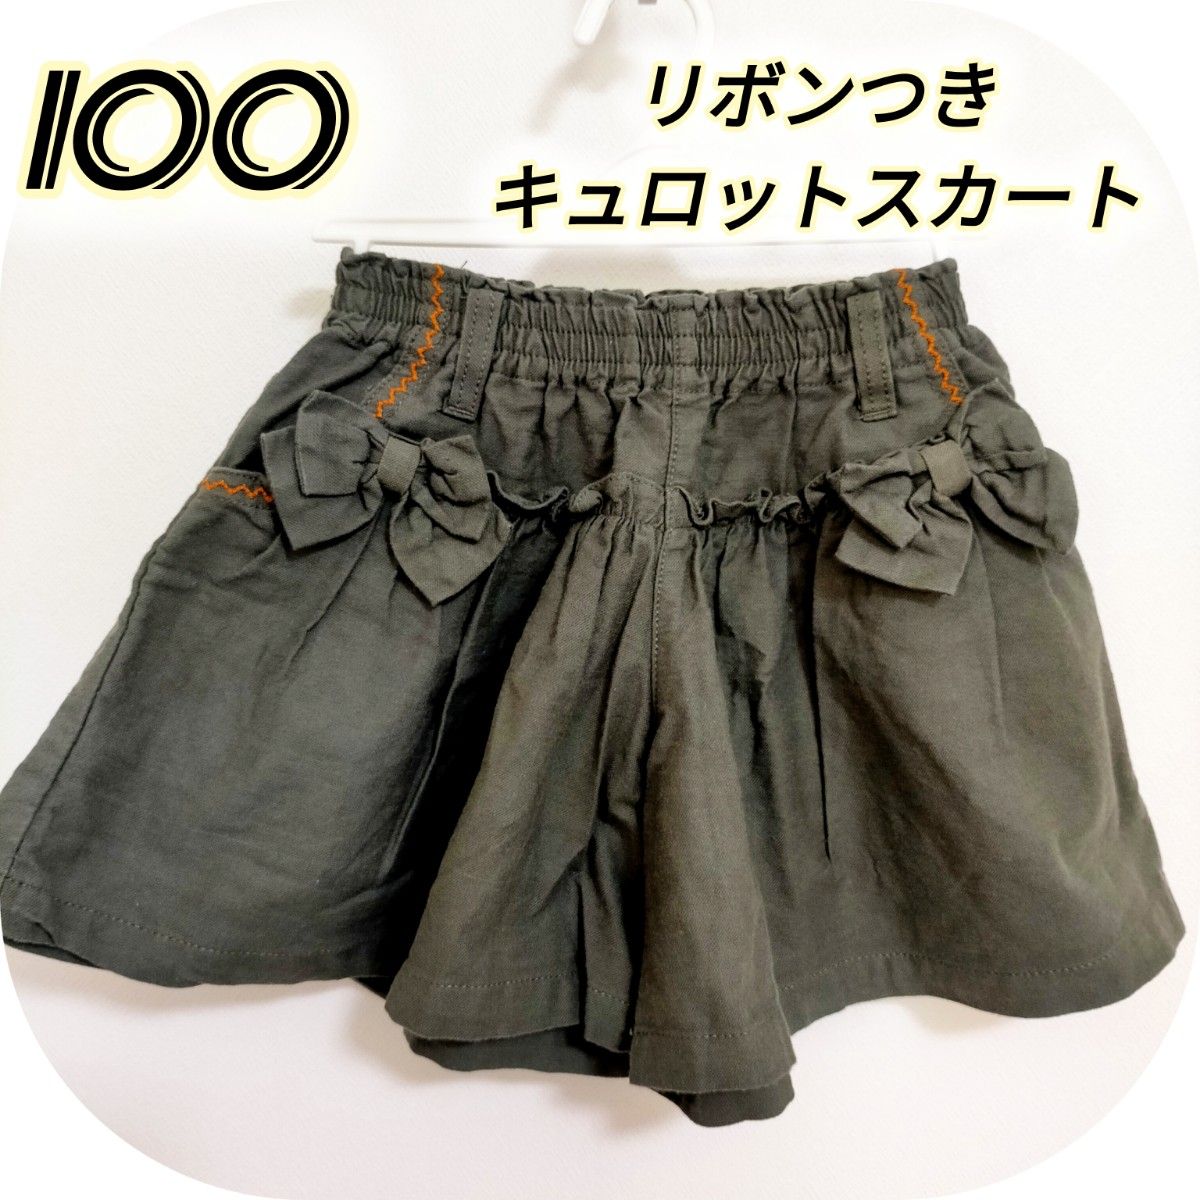 【美品】100 キュロット スカート ボトムス 深緑  リボン ステッチ フリル